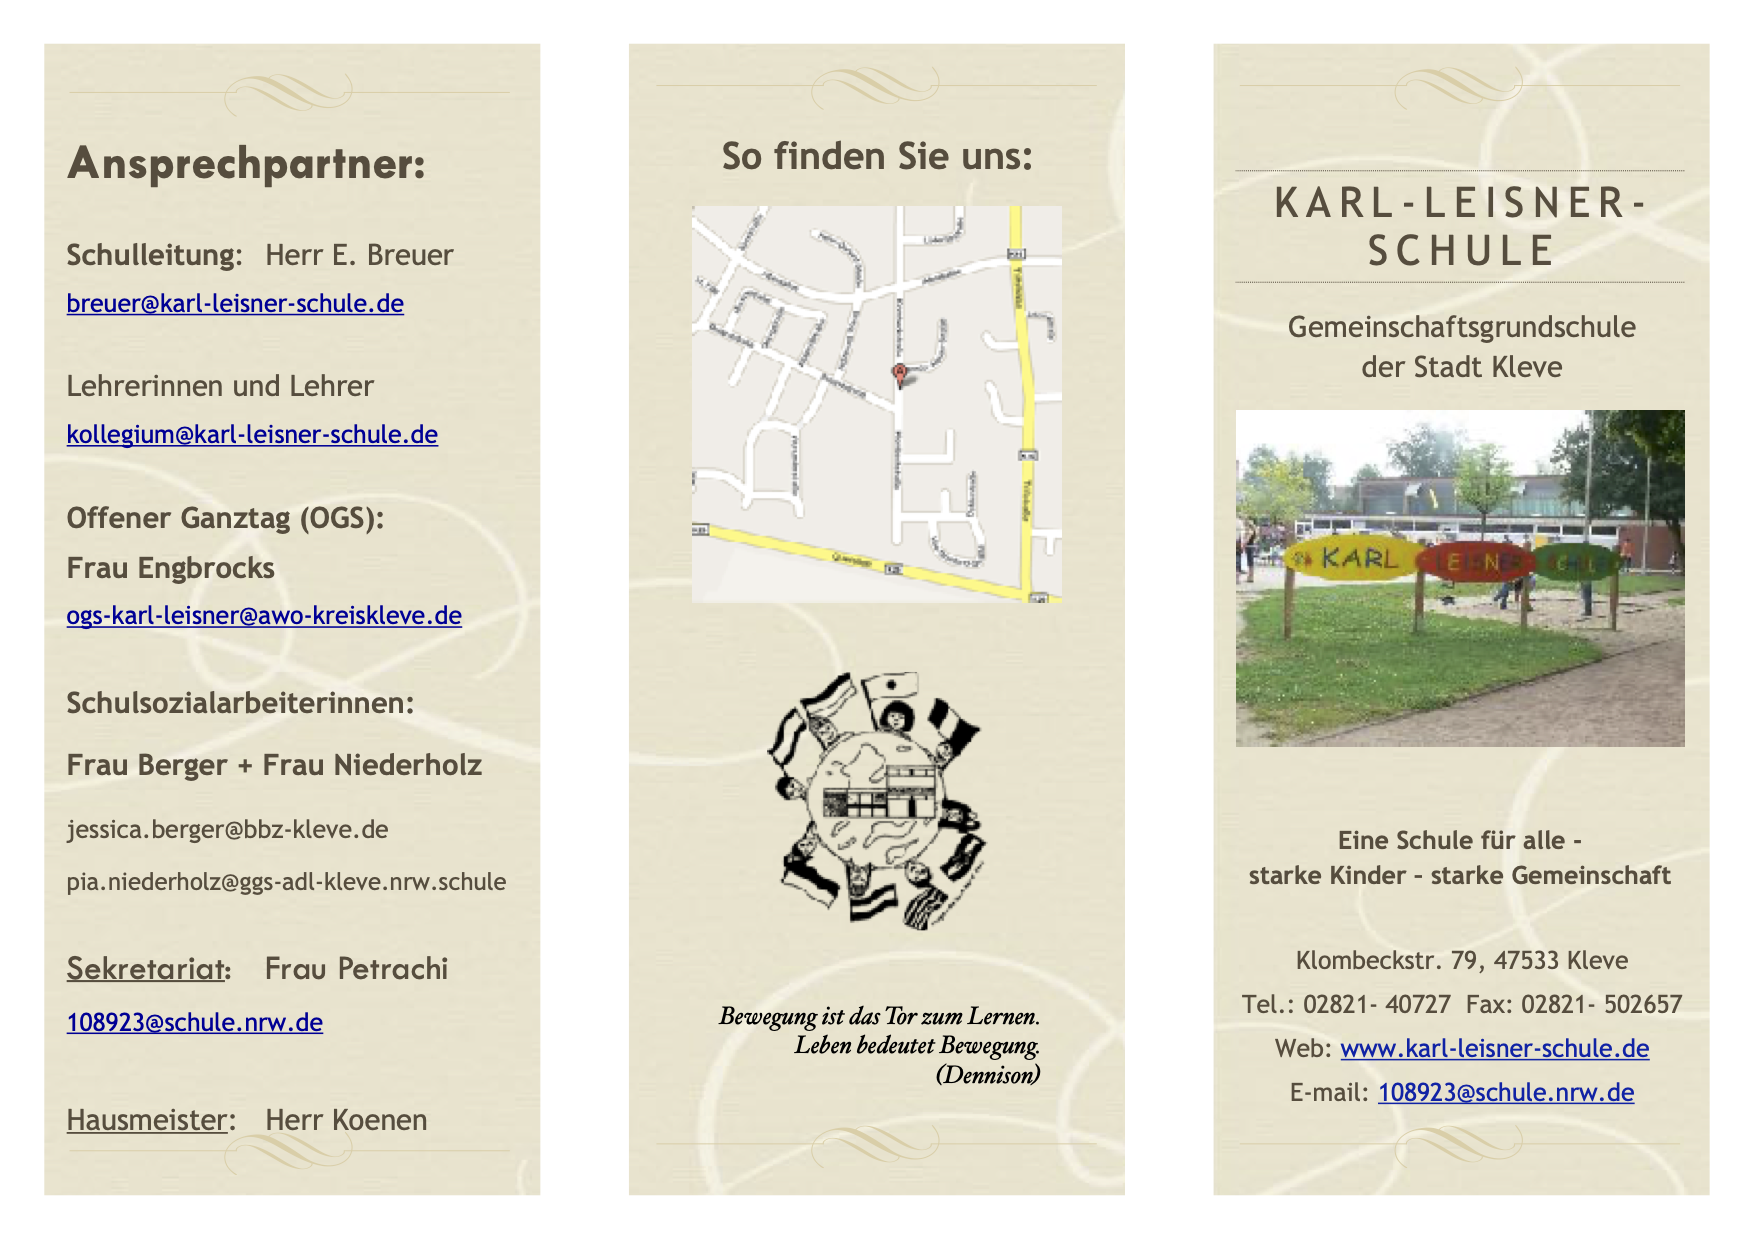 Bild vom aktuellen Flyer über die Karl-Leisner-Schule